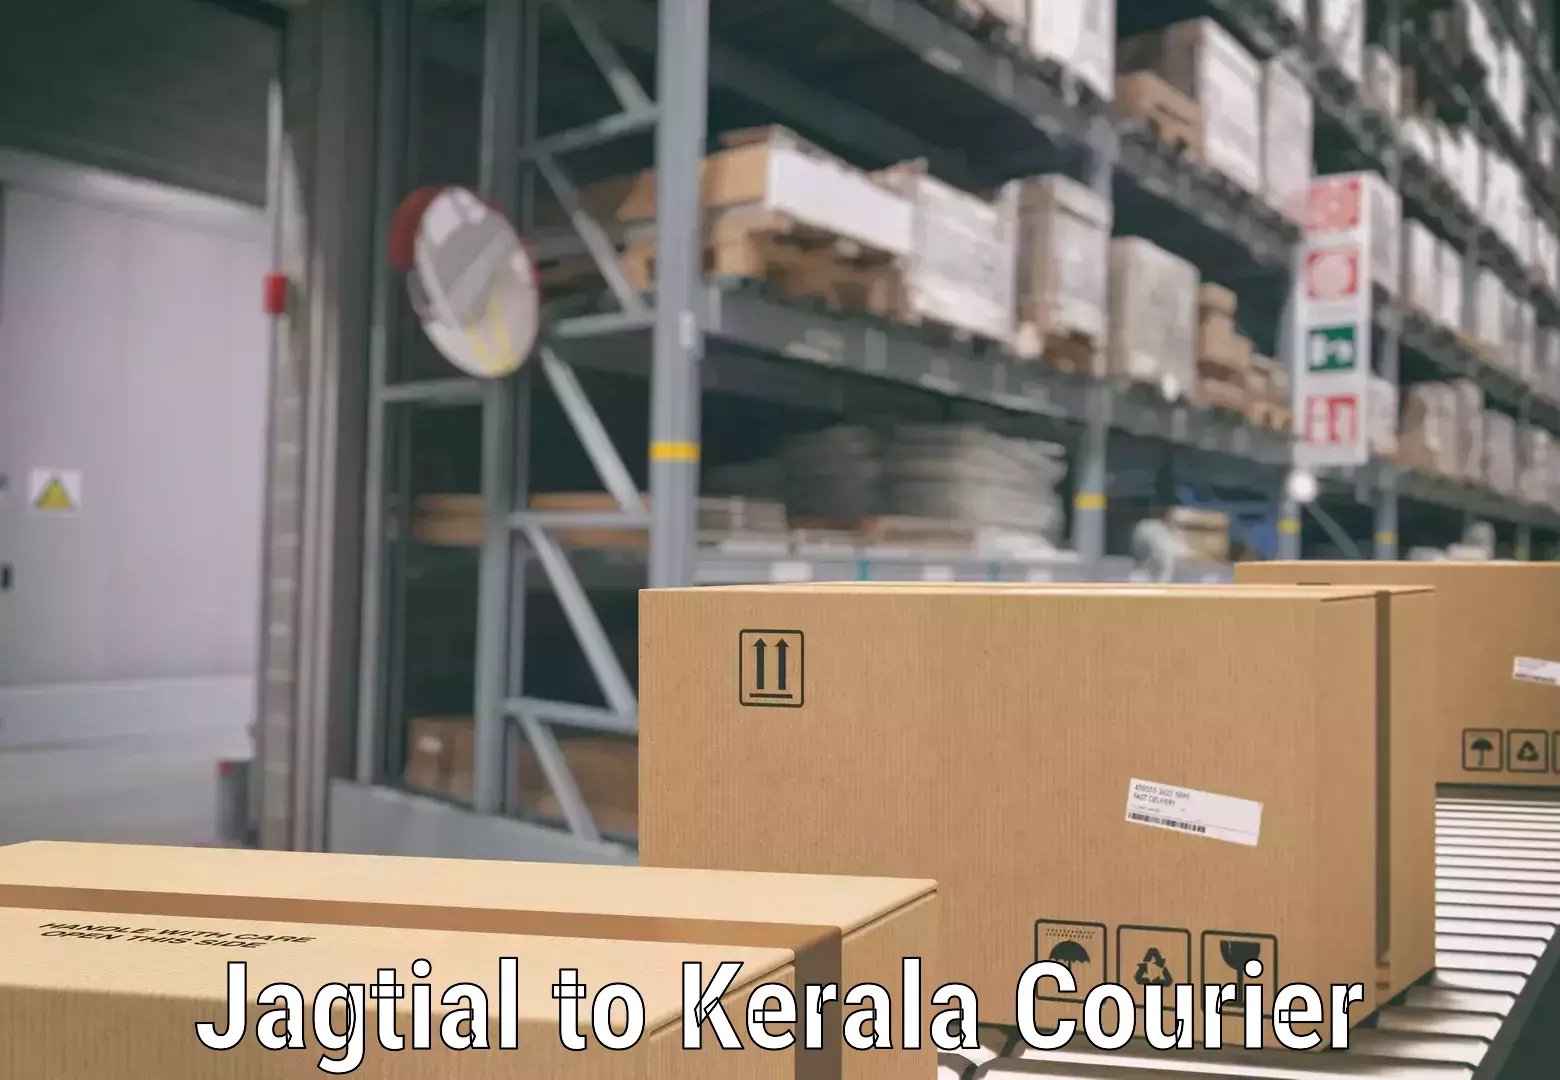 Baggage transport network Jagtial to Kerala